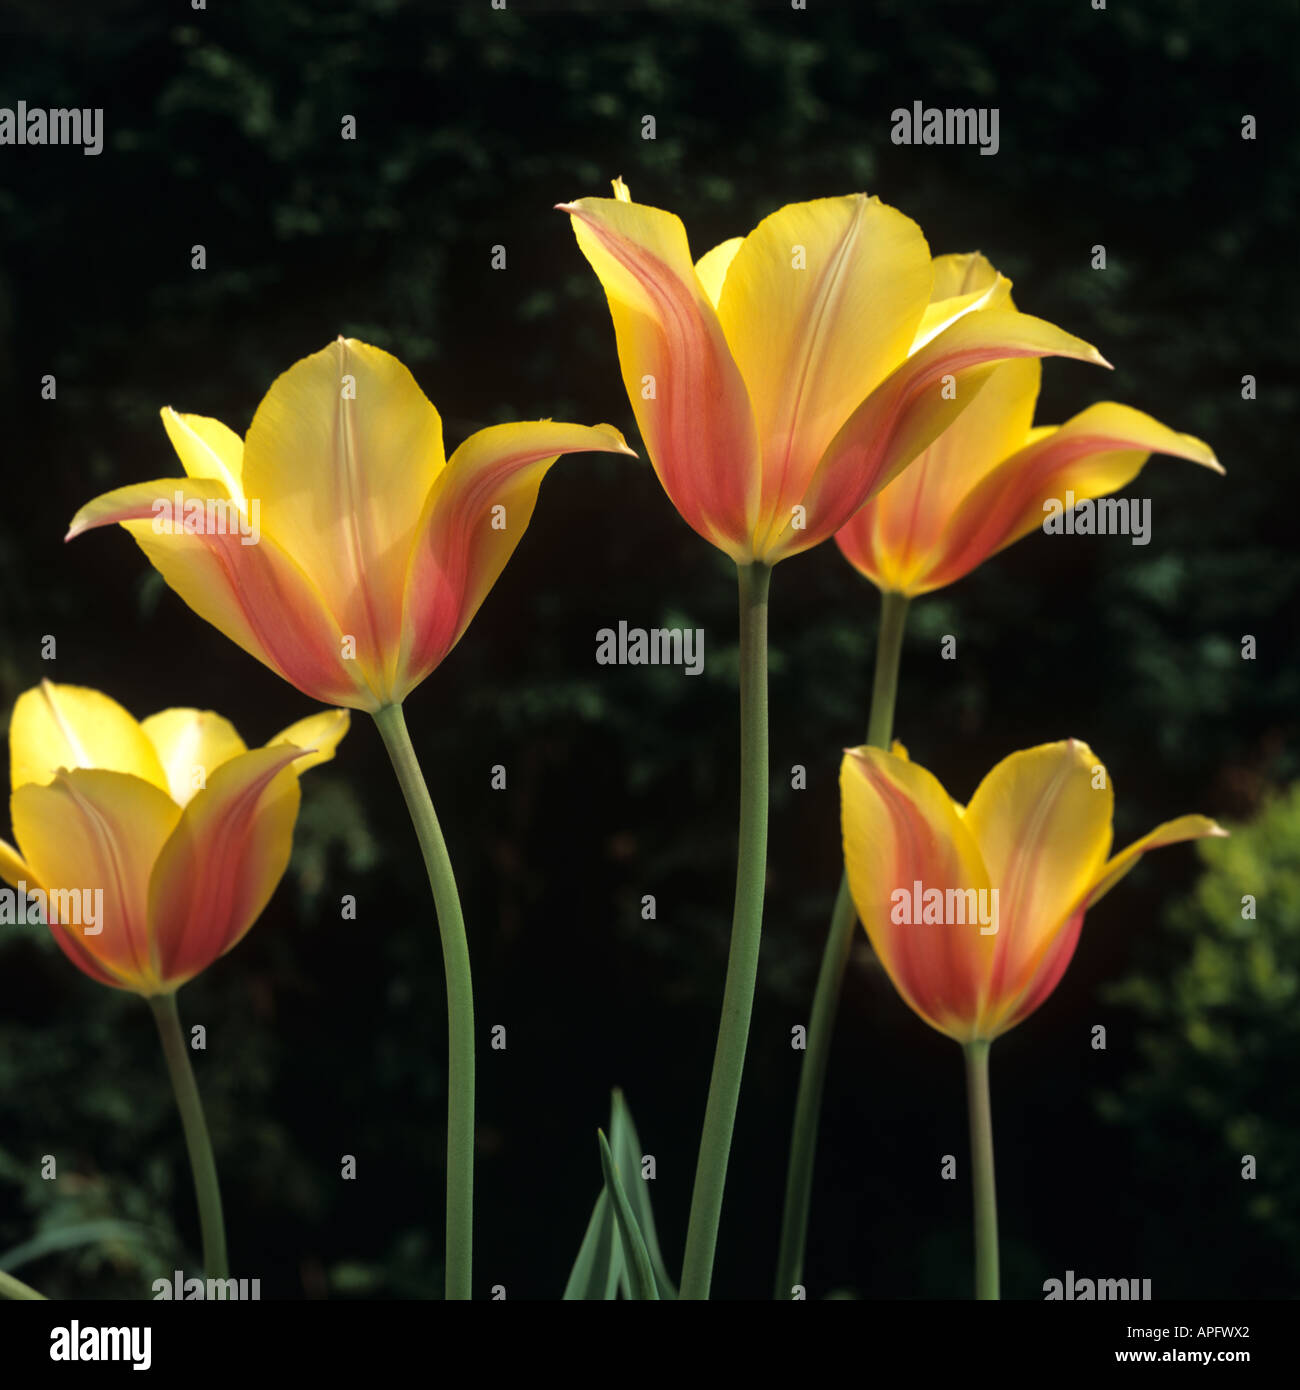 Flowers Of Tulip Blushing Lady Stock Photo Alamy